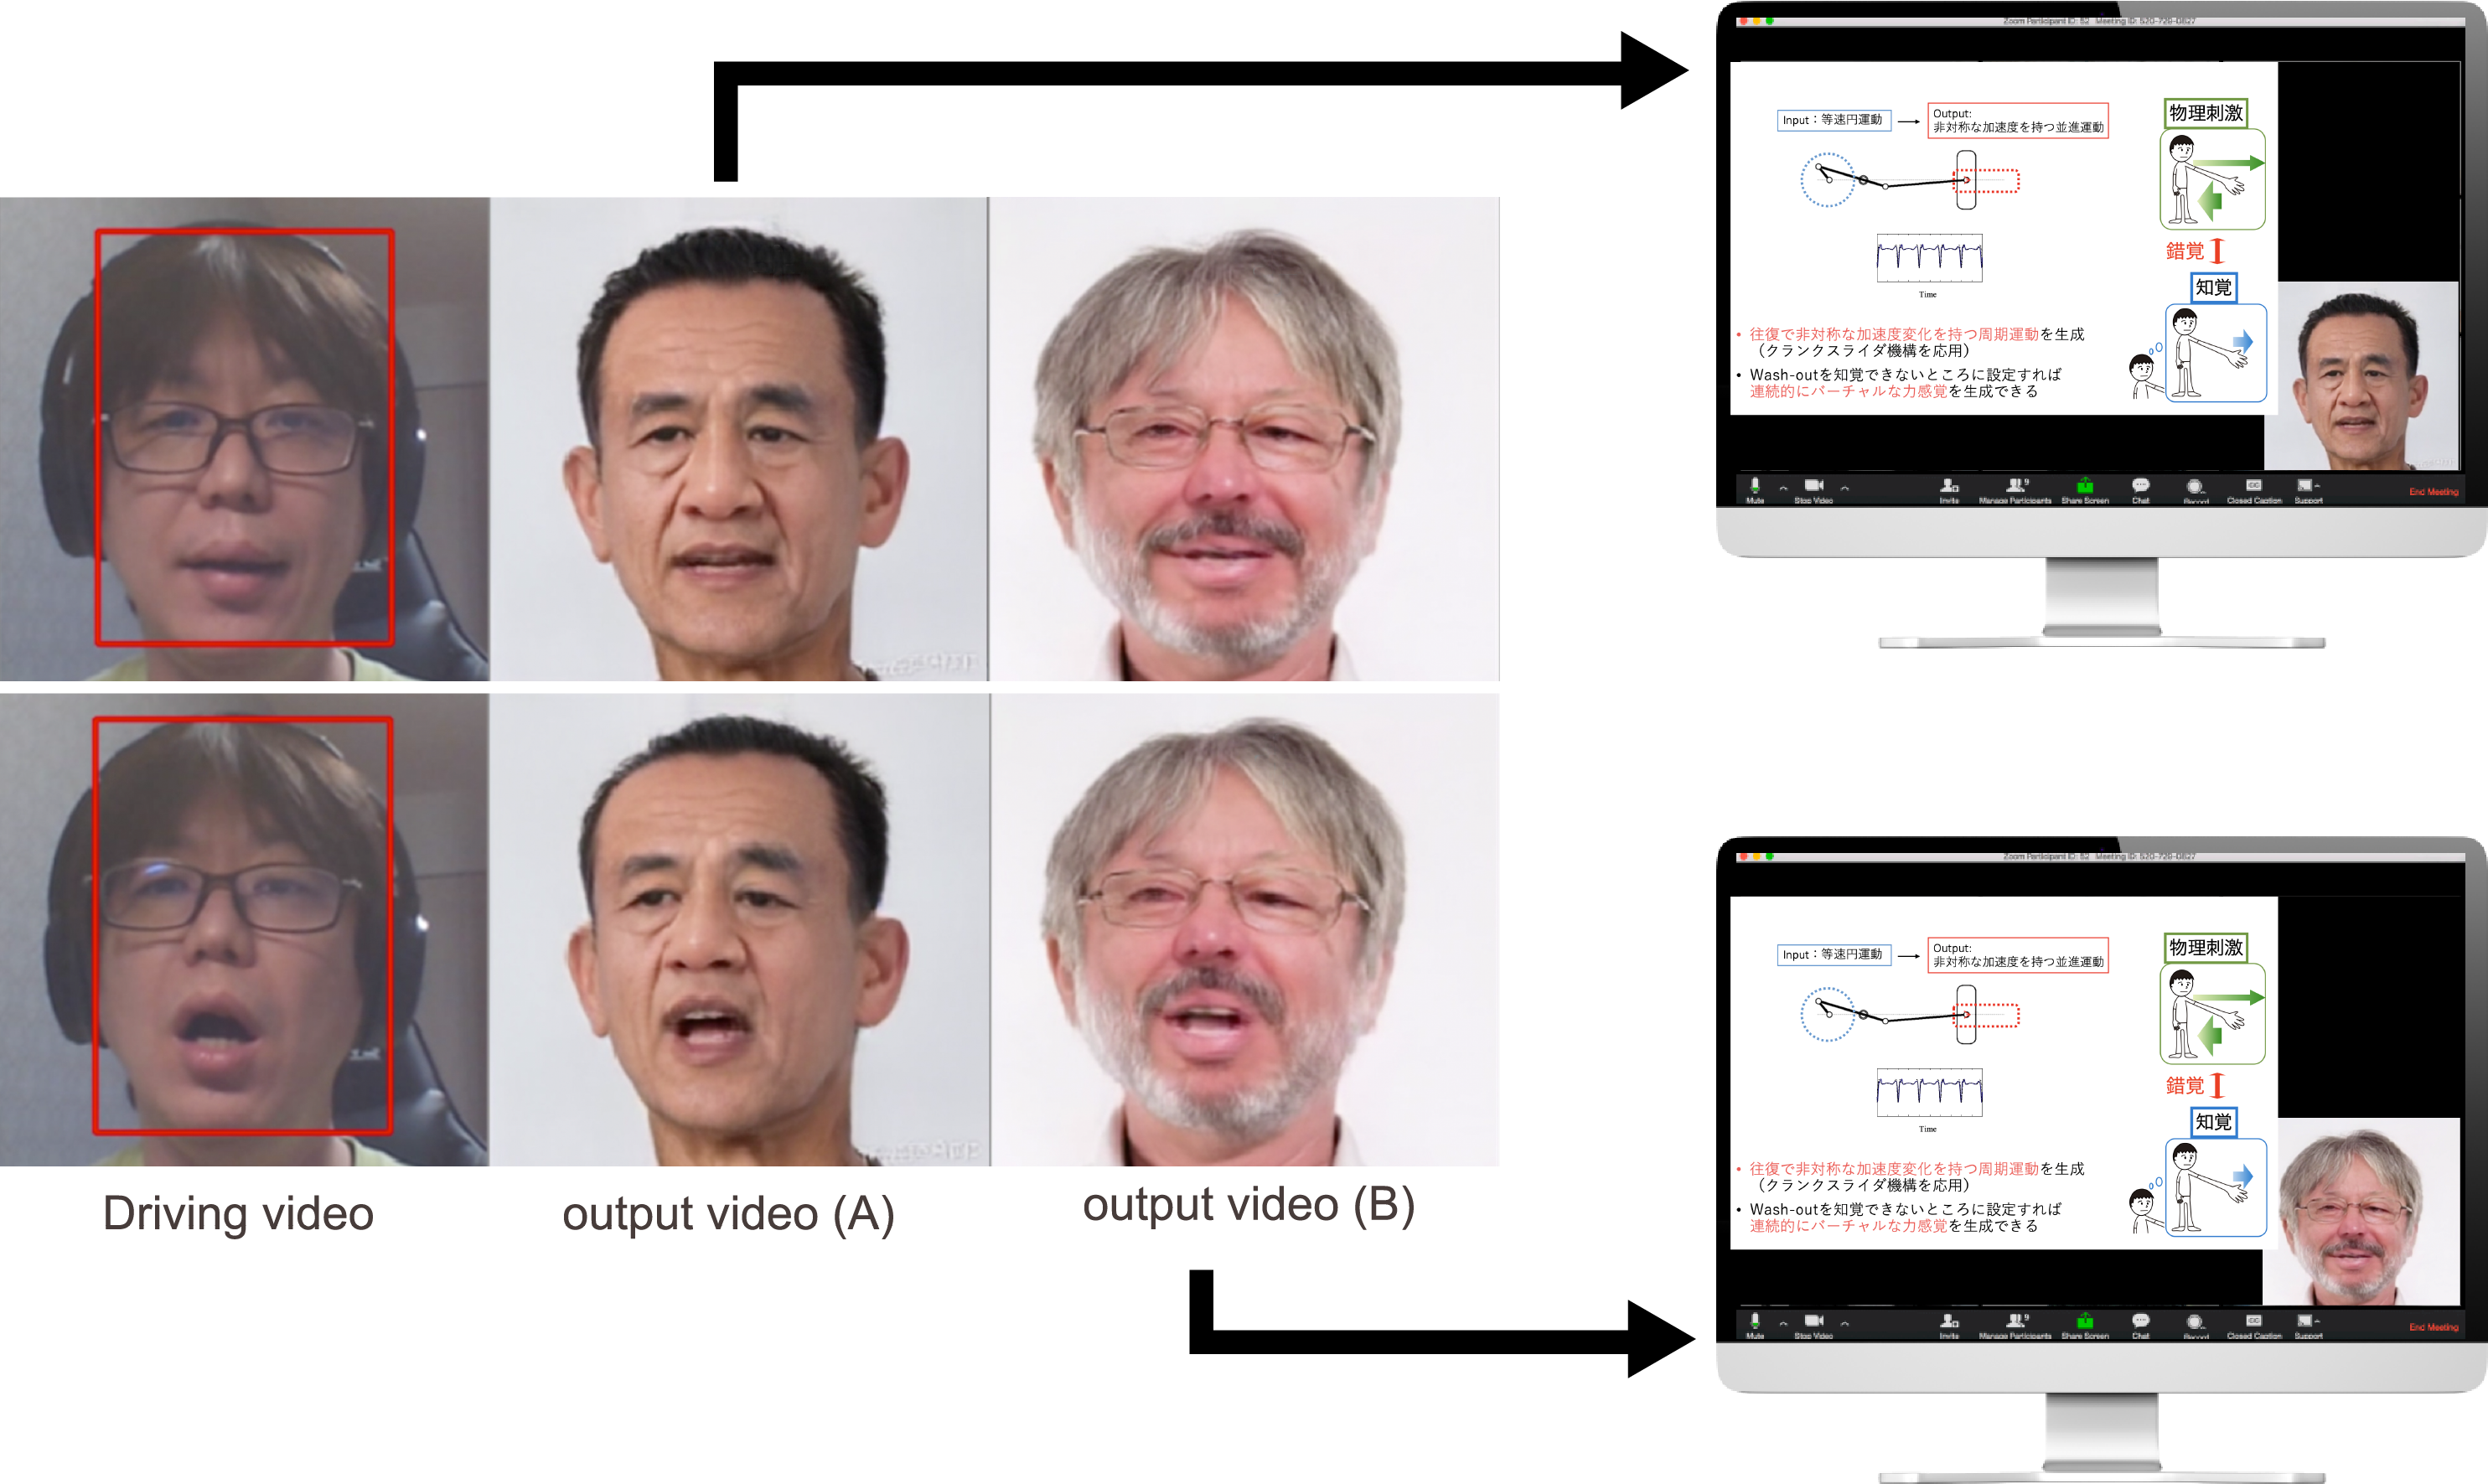 講師の顔画像の動画化の例